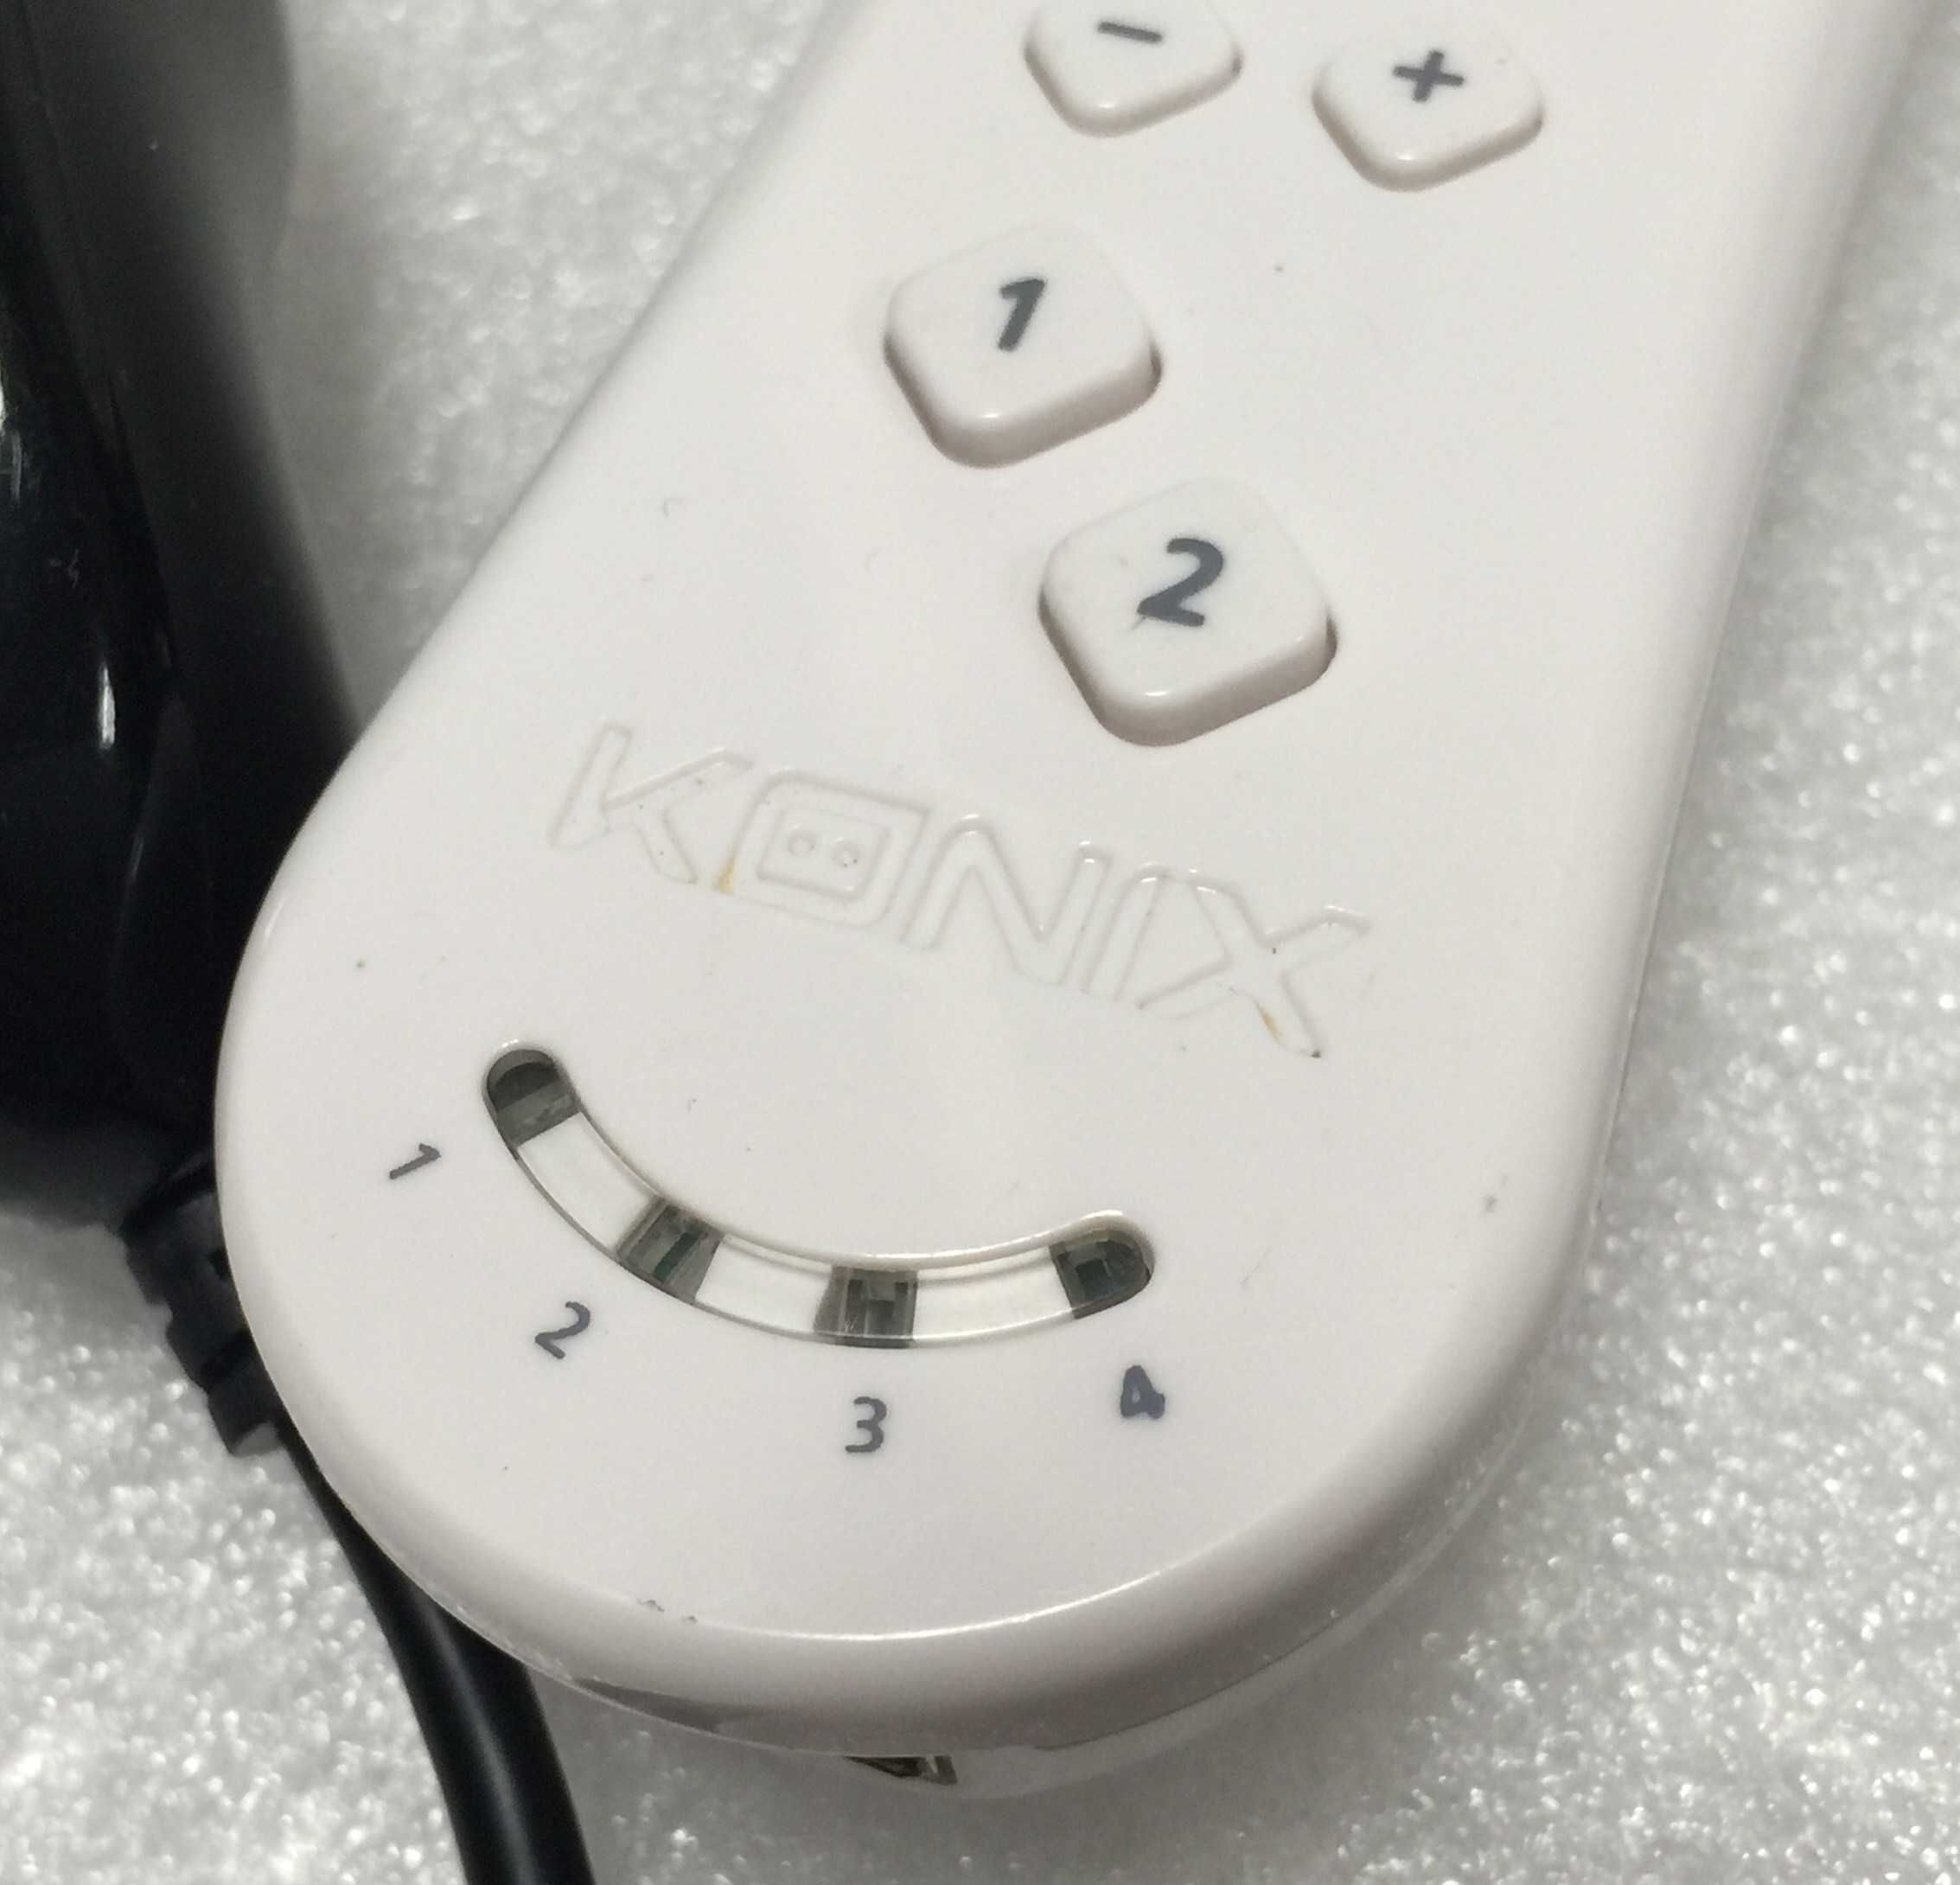 Pakiet Pilot Remote i Nunchuck Konix do Nintendo Wii